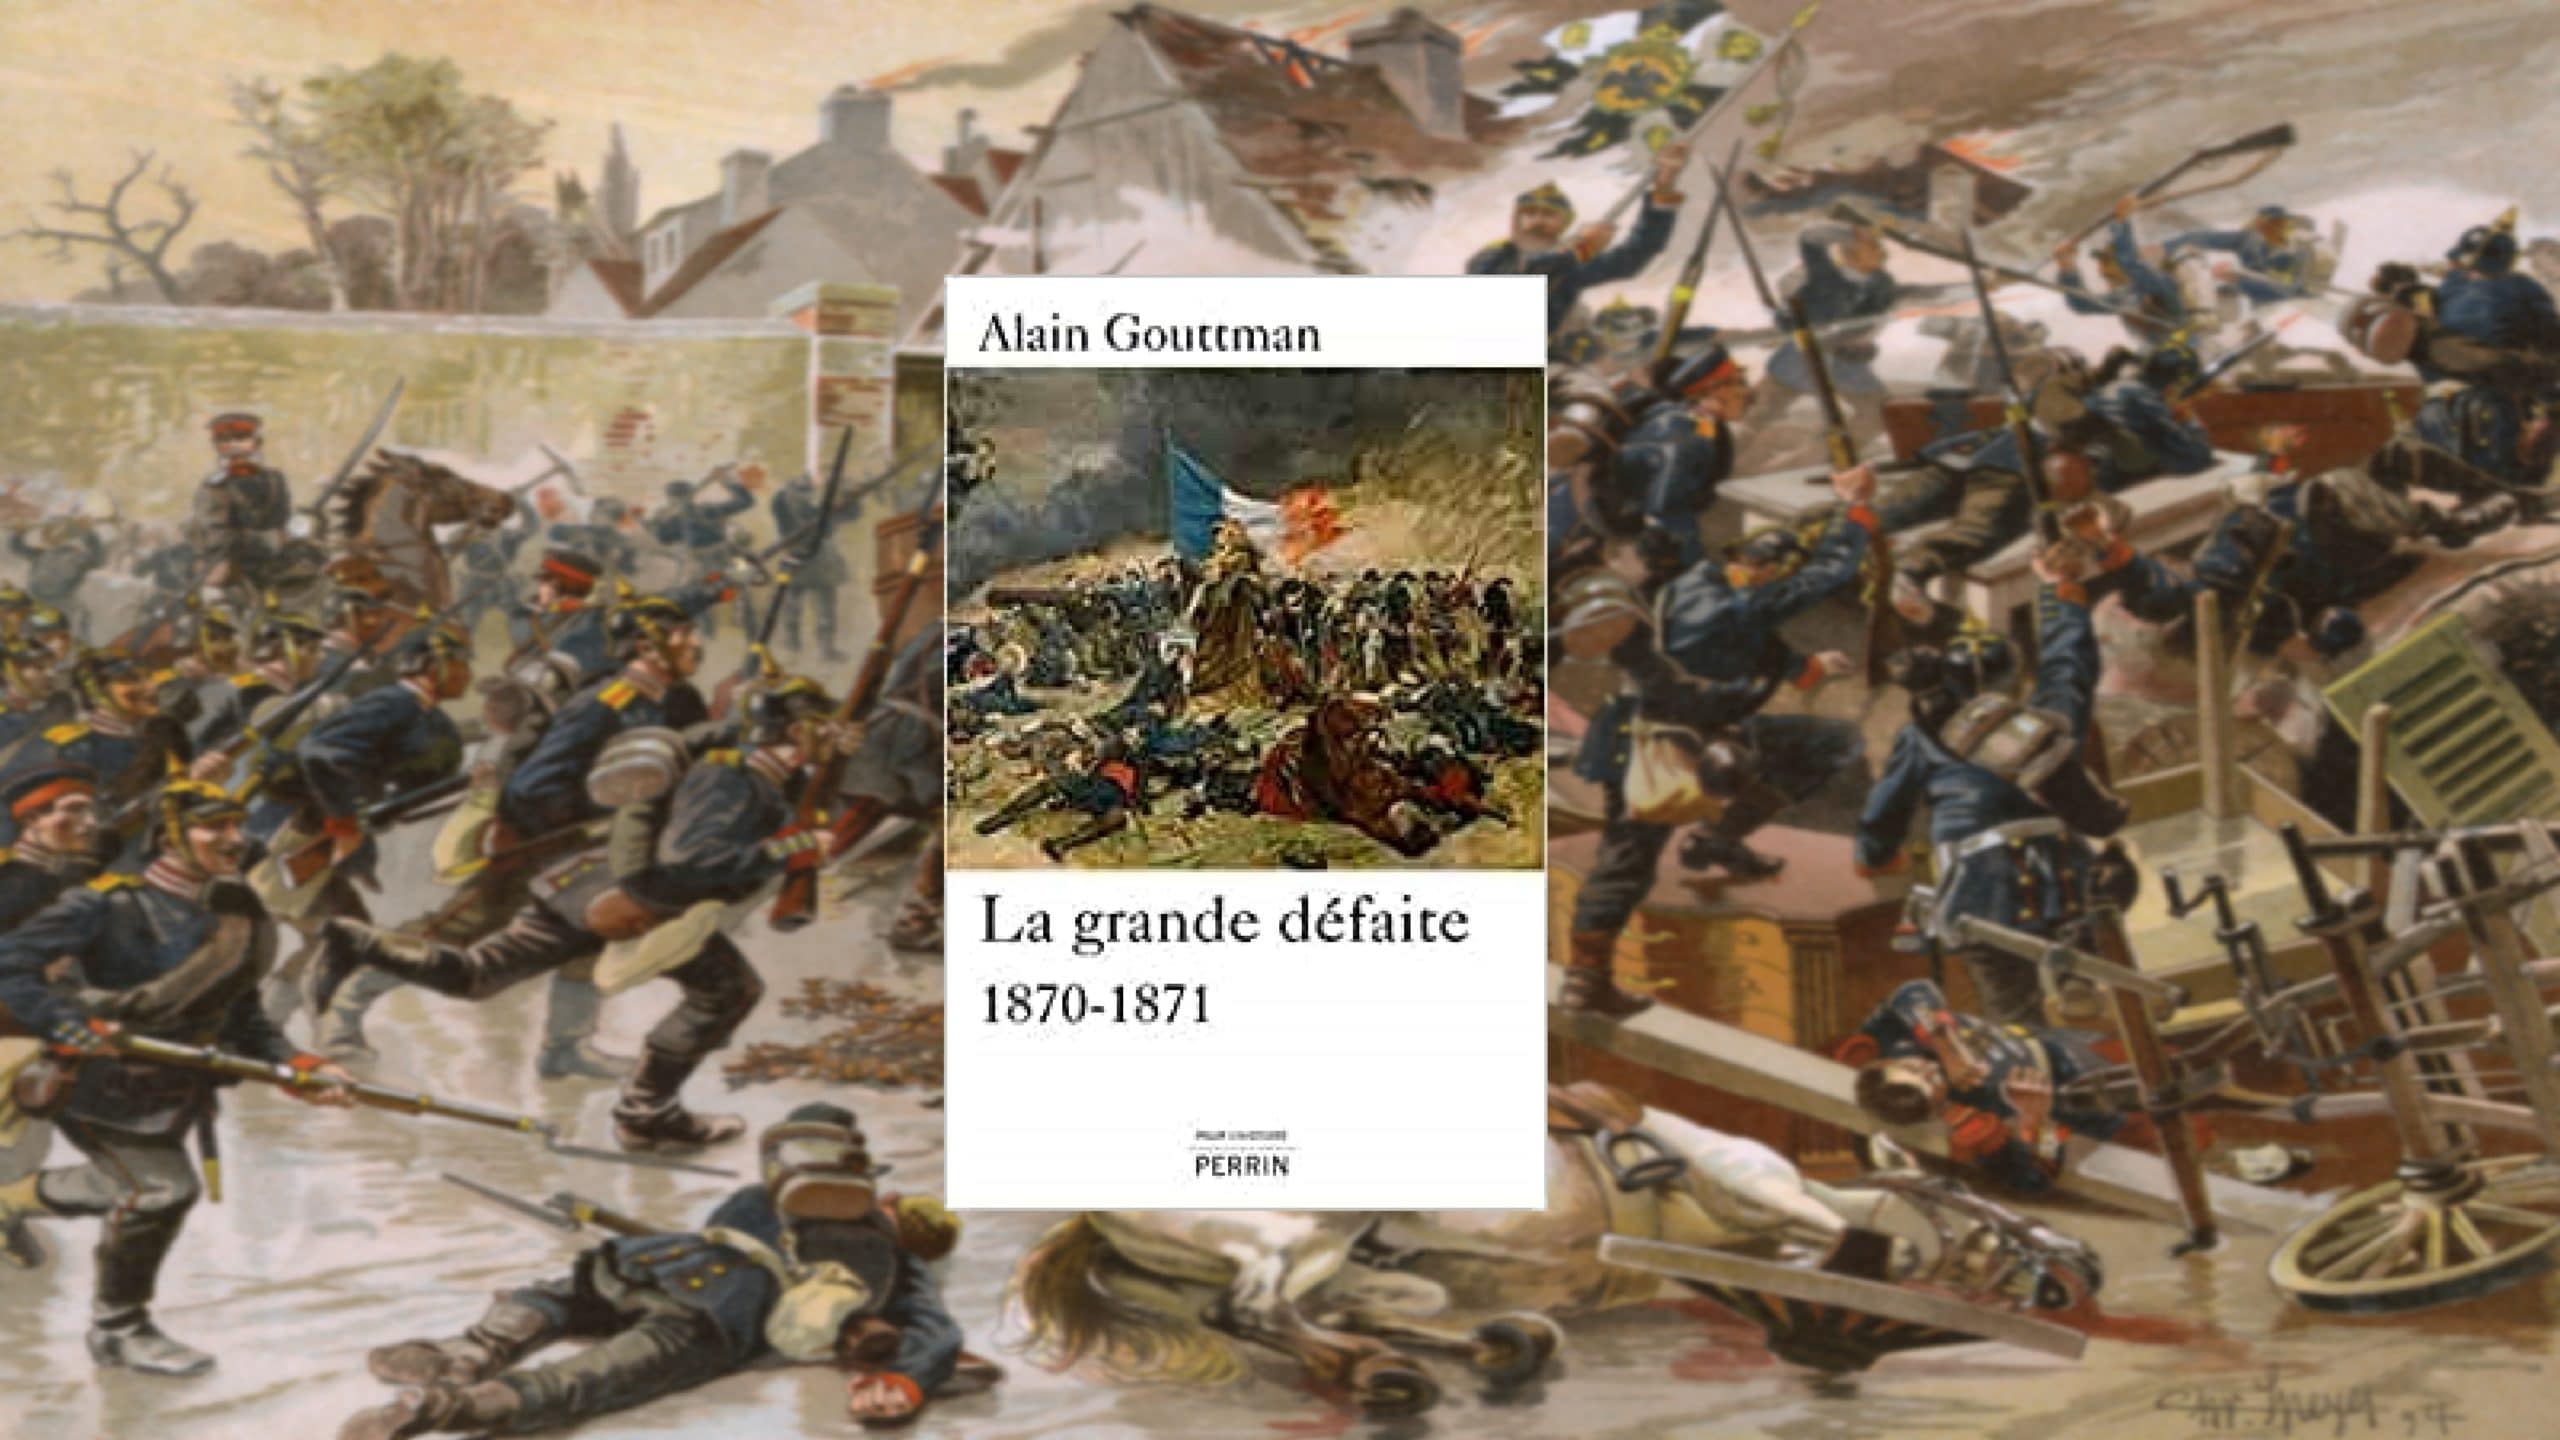 La grande défaite 1870-1871 - Alain Gouttman. (c) 51338736_000001